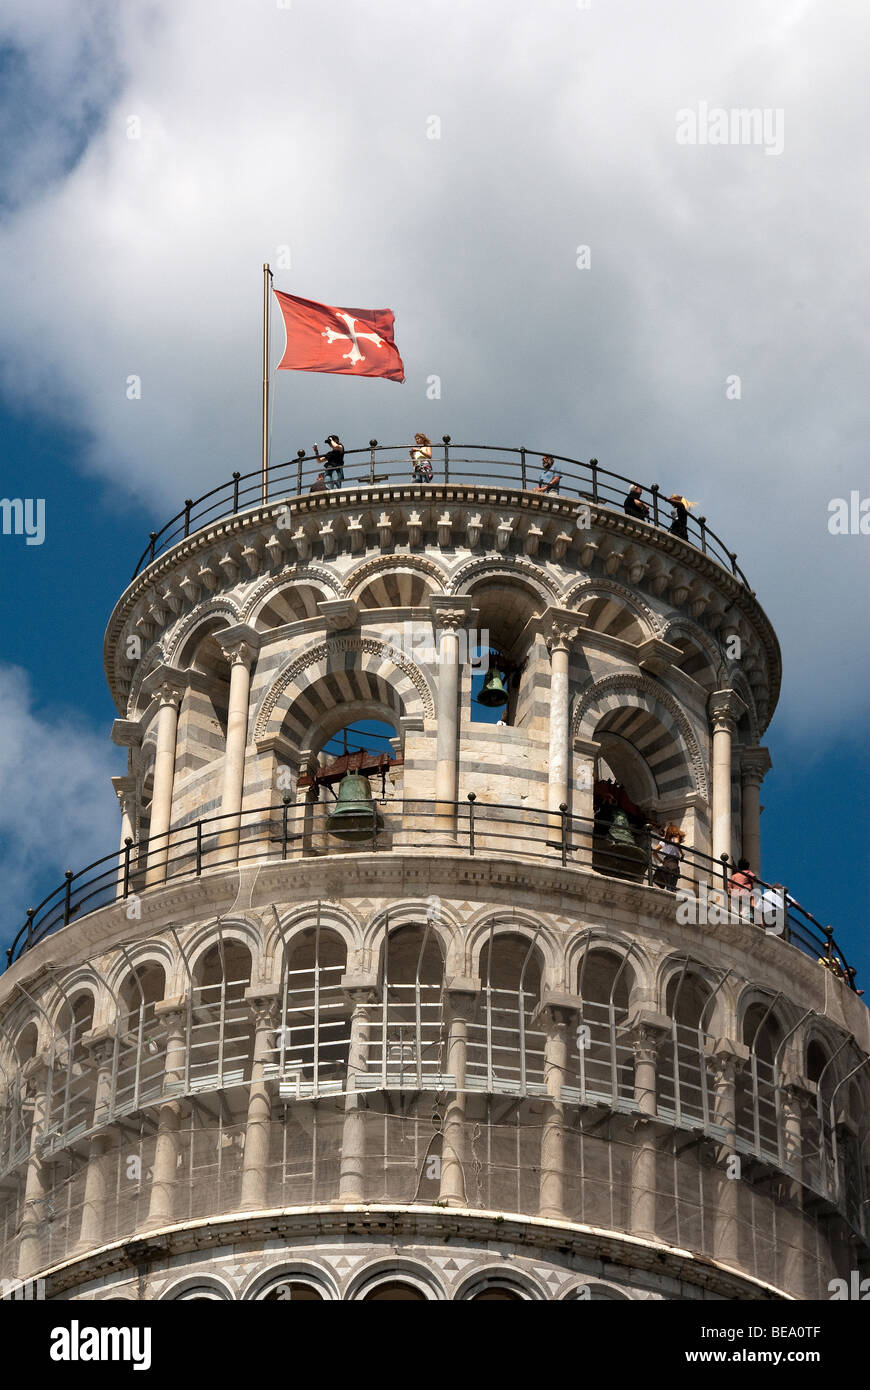 Les touristes en haut de la Tour Penchée de Pise avec drapeau rouge de Pise avec croix de Malte blanche et la sculpture d'angelots Banque D'Images